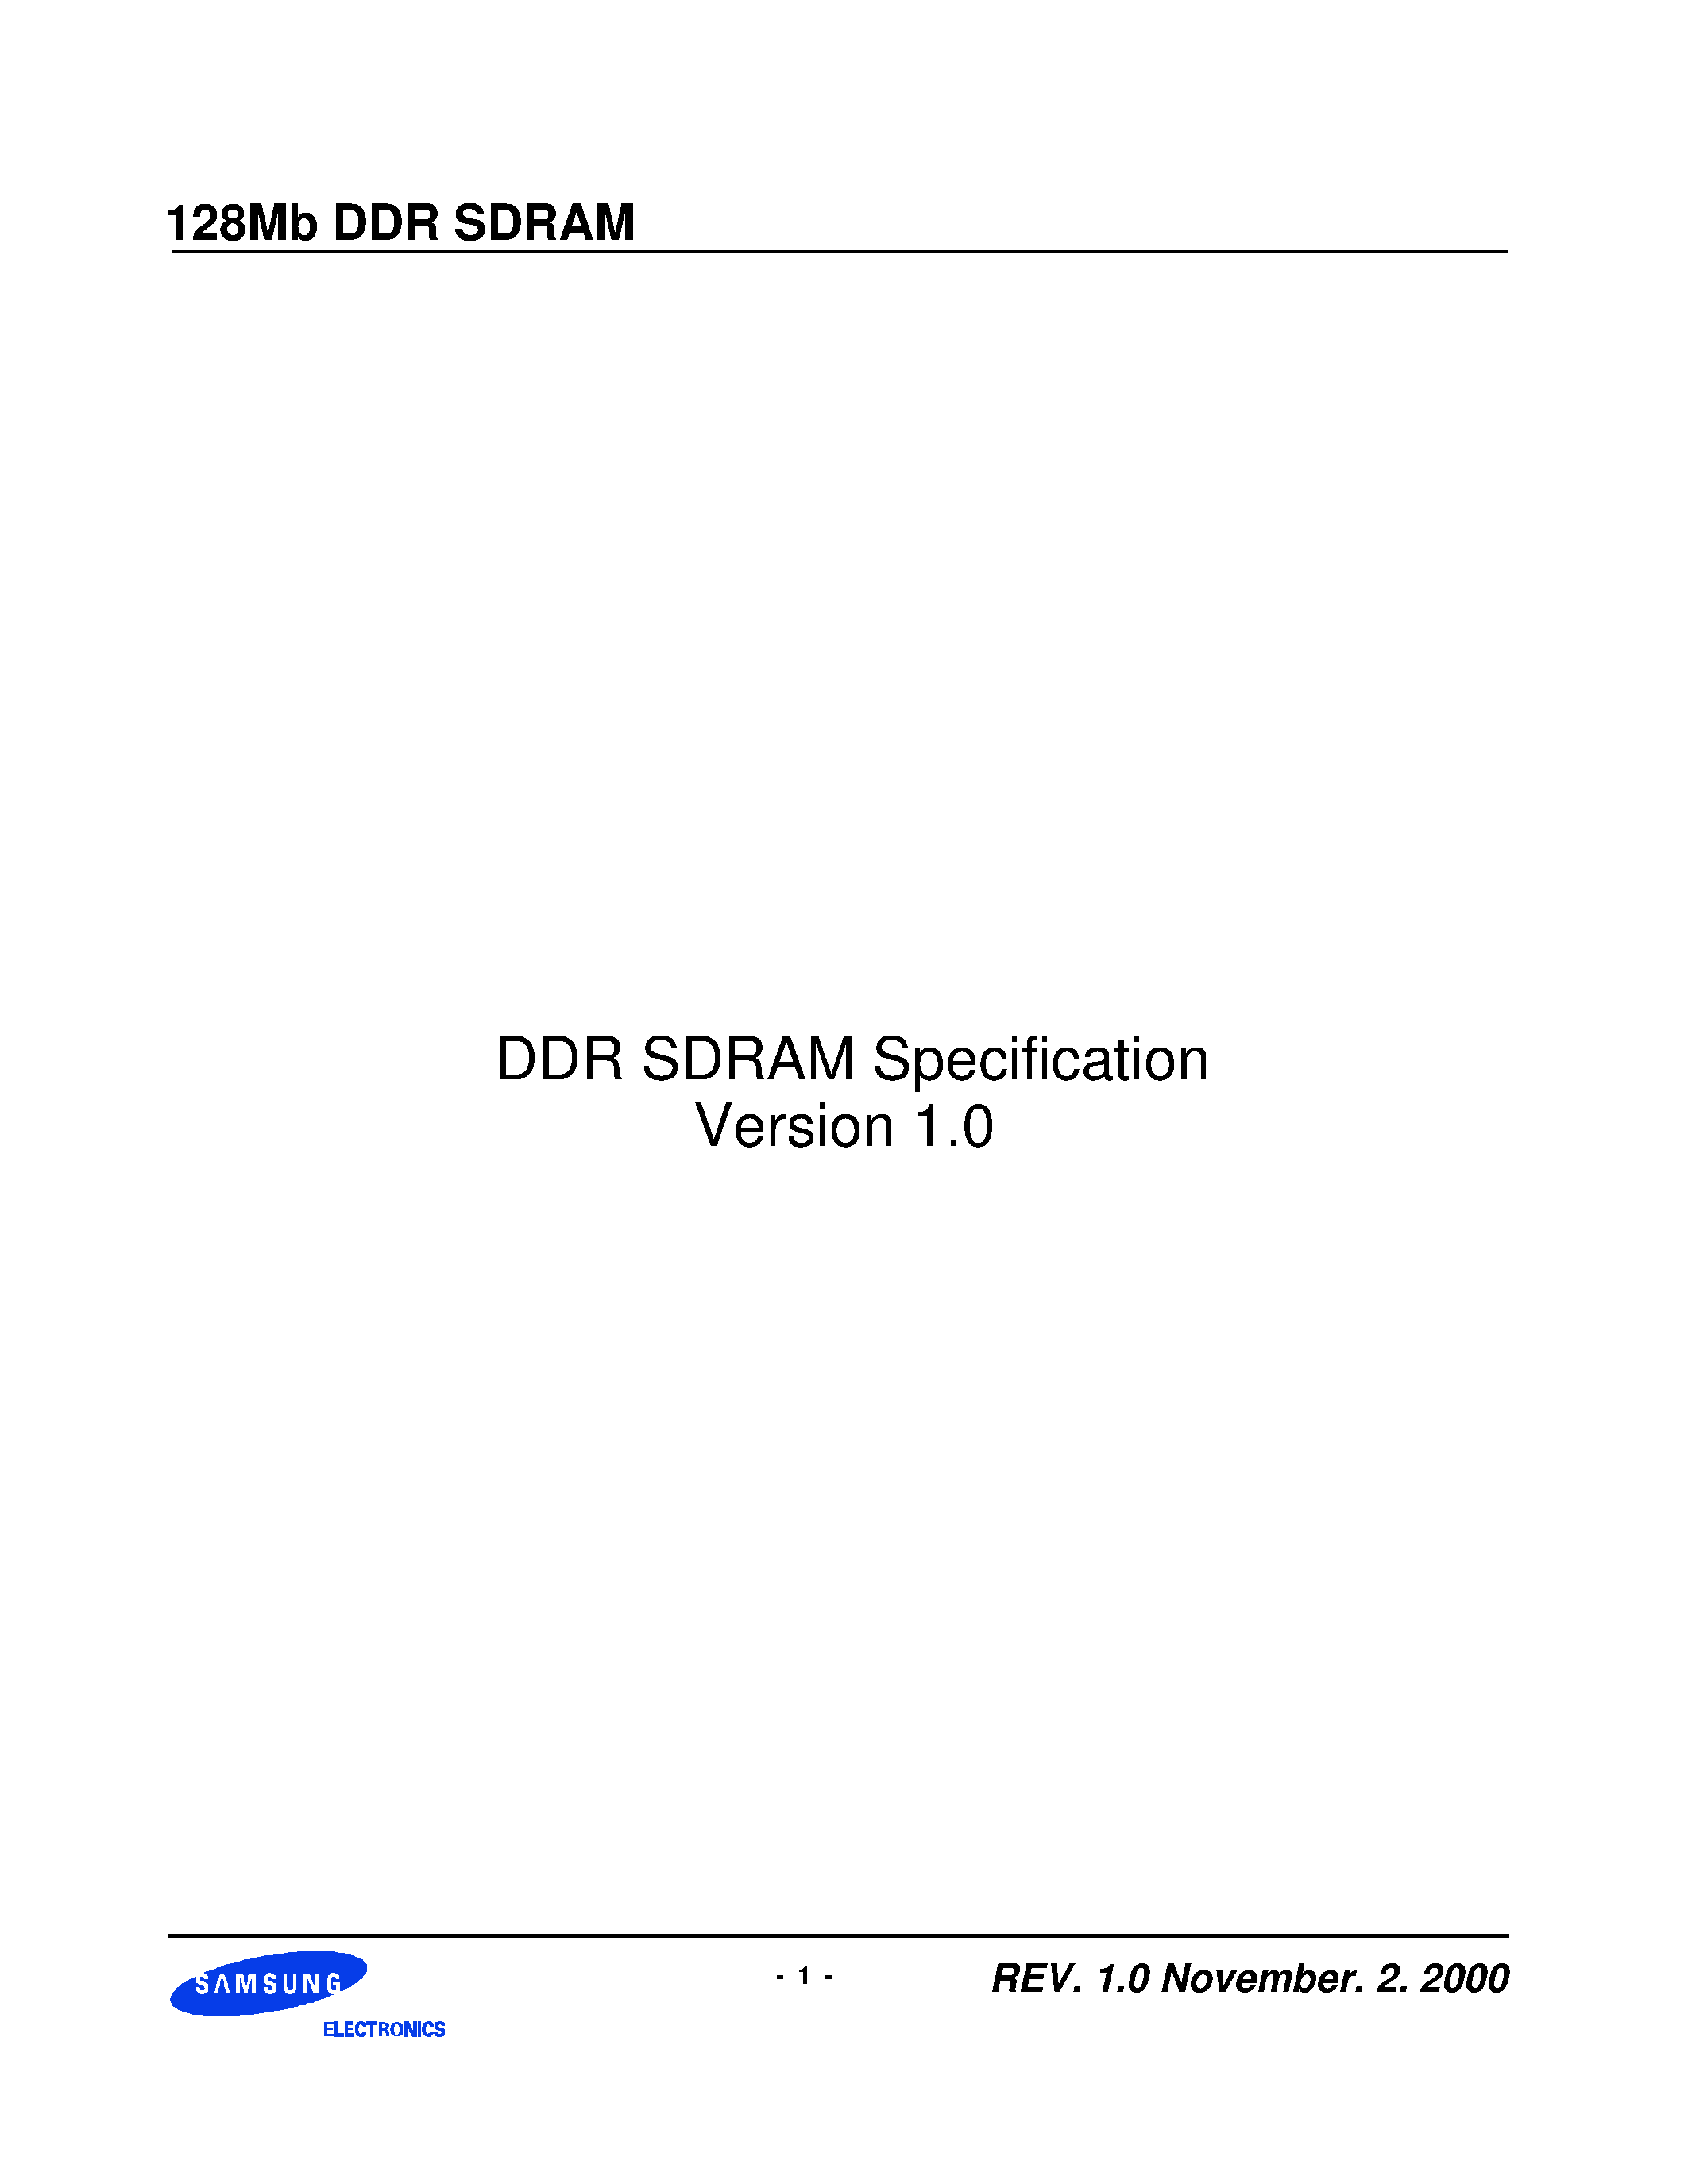 Даташит KM48L16031BT-G(L)Z - DDR SDRAM Specification Version 1.0 страница 1